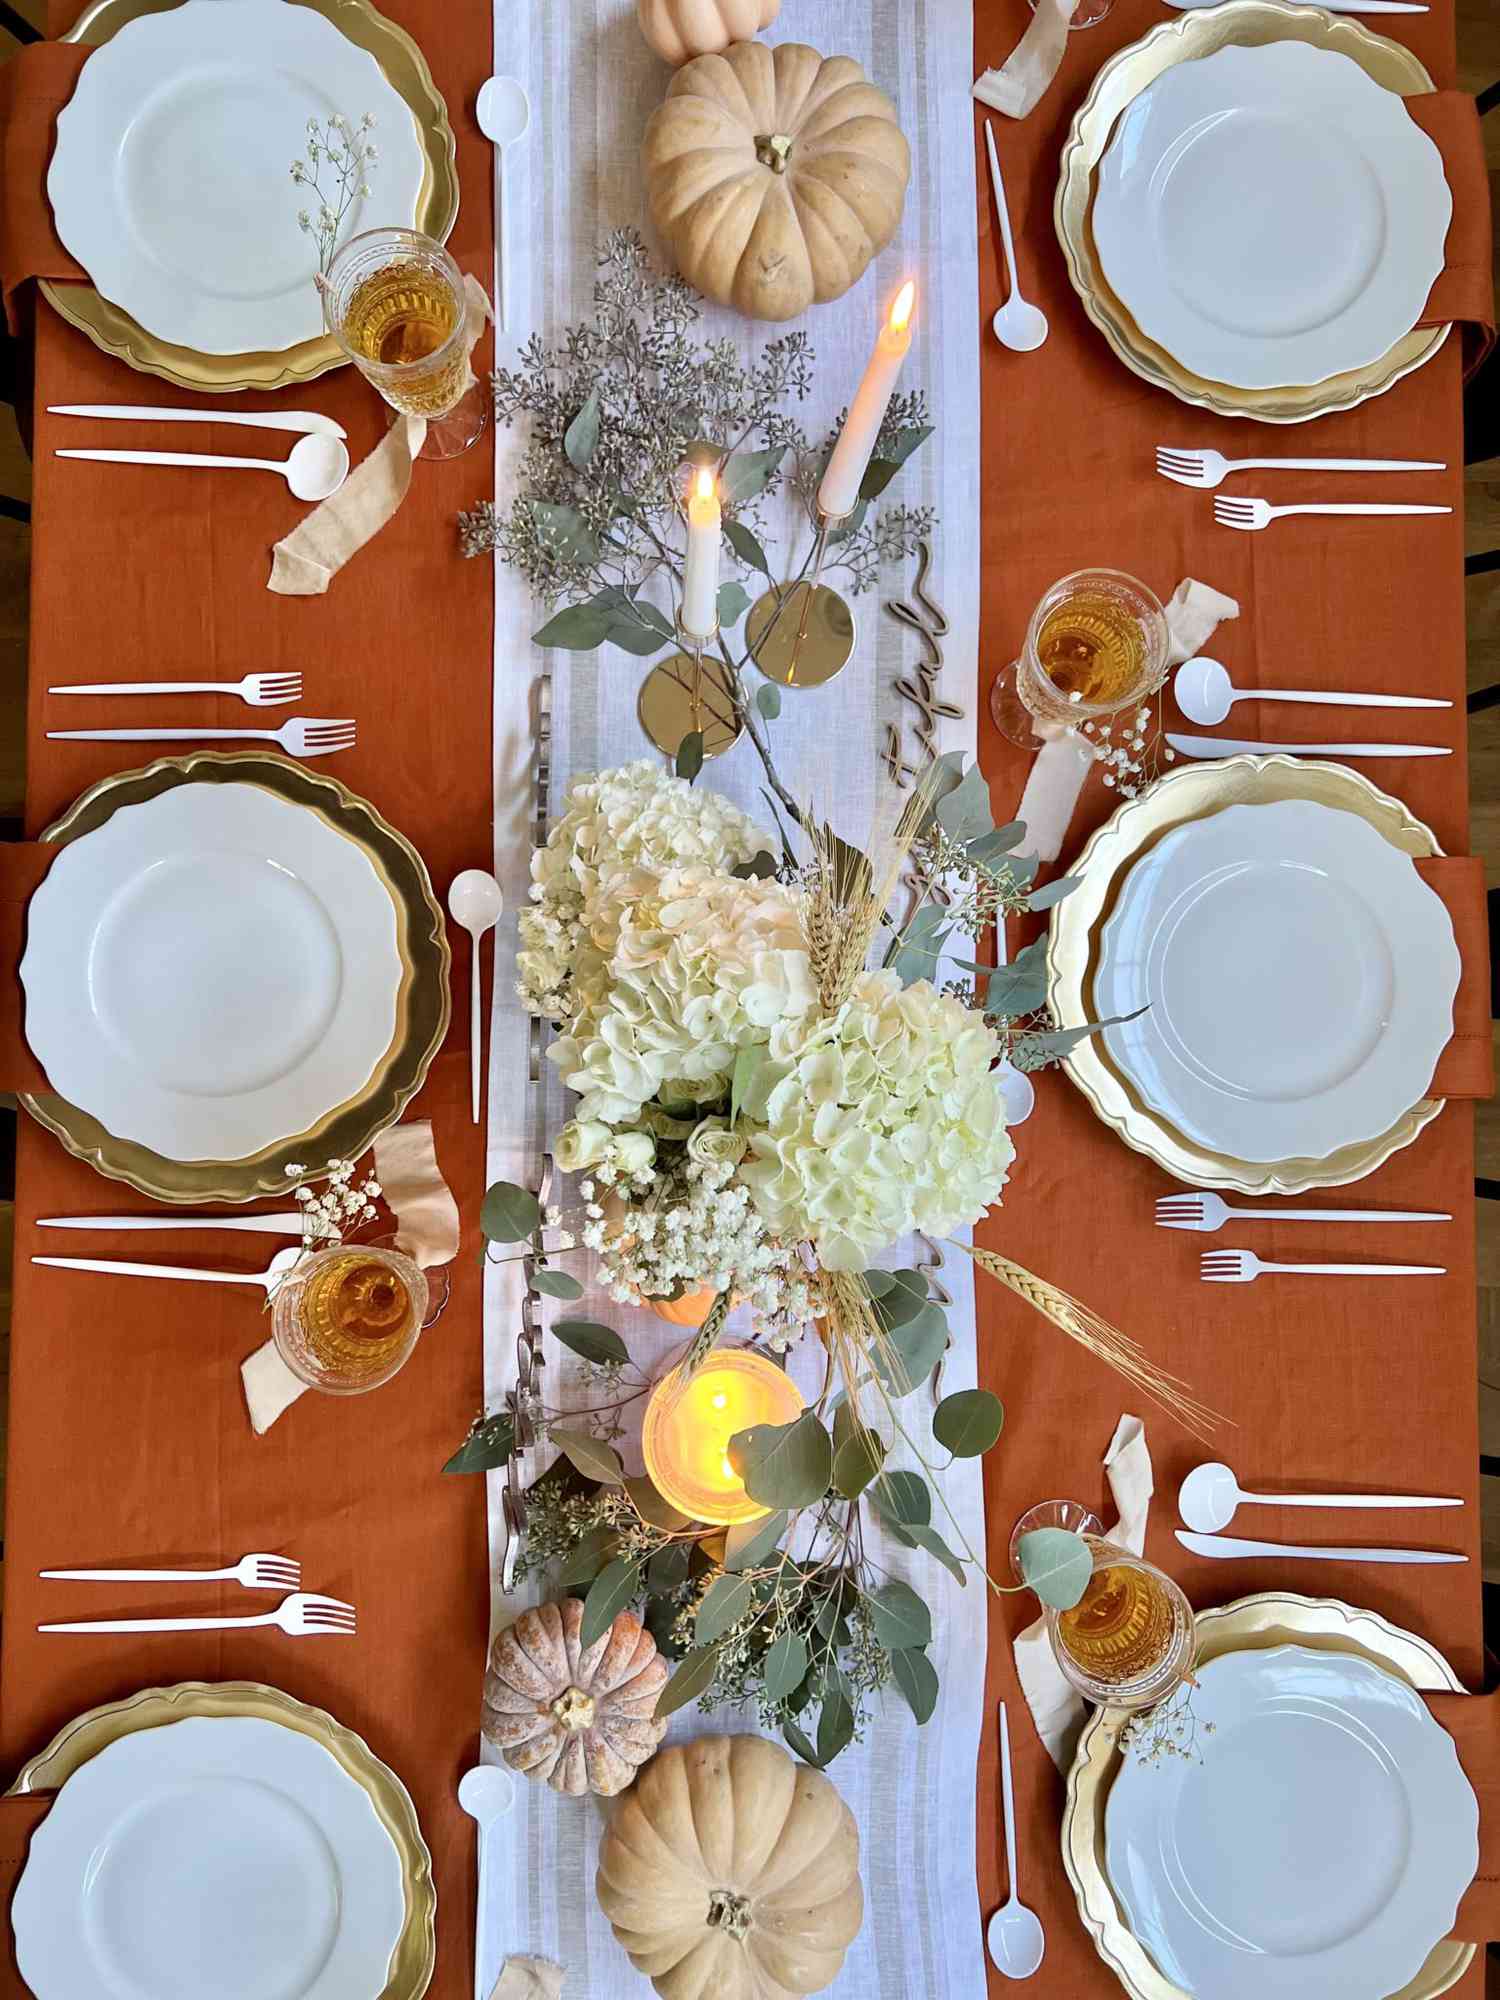 Overhead eines zu Thanksgiving gedeckten Tisches mit dekorativen Tafelaufsätzen und Platzdeckchen